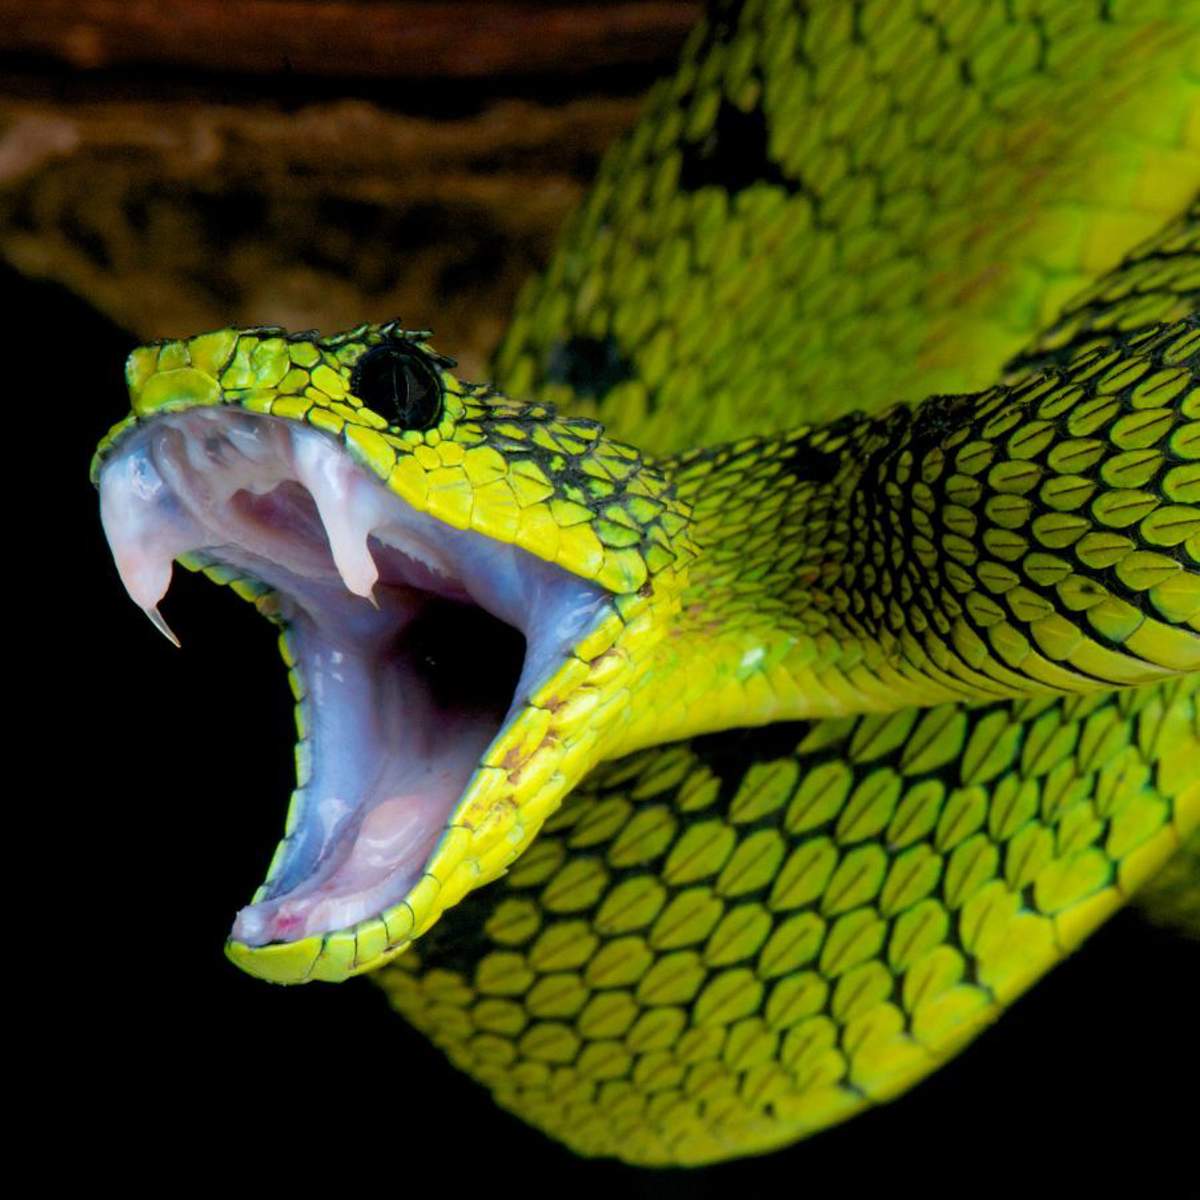 Soñar con serpientes: ¿qué significa y cómo debemos interpretarlo?